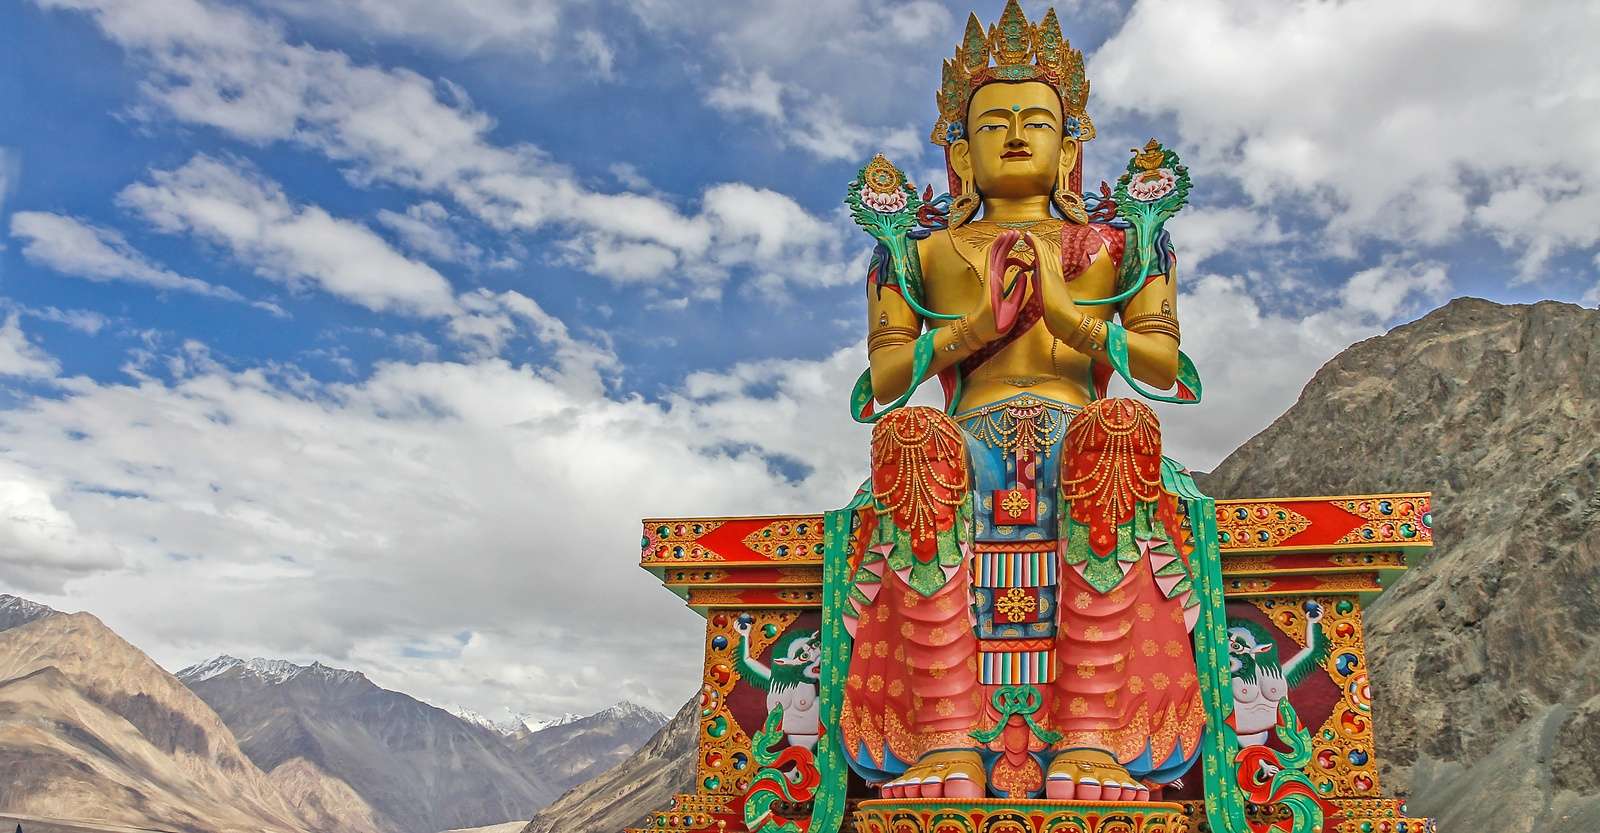 Maitreya Buddha, Diskit Monastery, Nubra Valley, Ladakh, India.